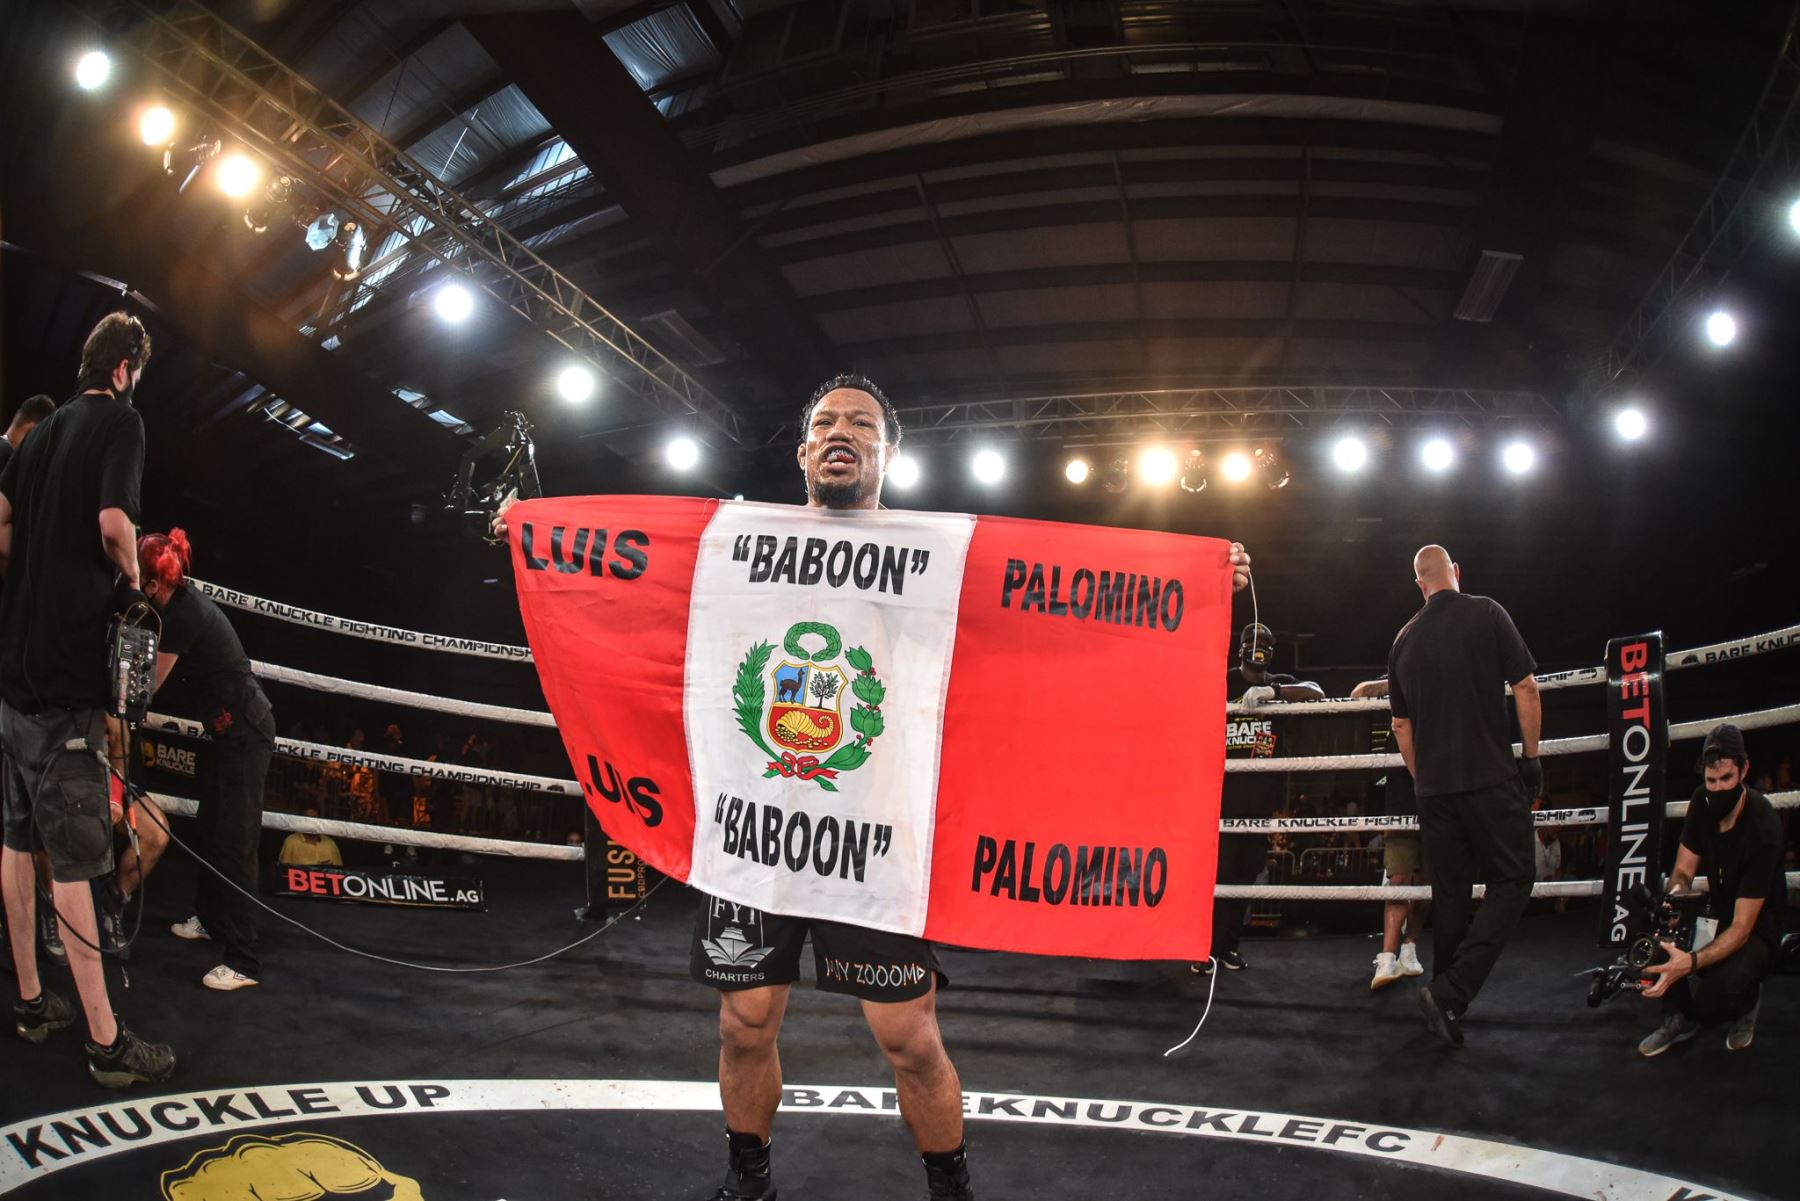 campeón mundial de Artes Marciales Mixtas (MMA) y boxeo sin guantes, Luis “Baboon” Palomino volvió al Perú con nuevo récord mundial